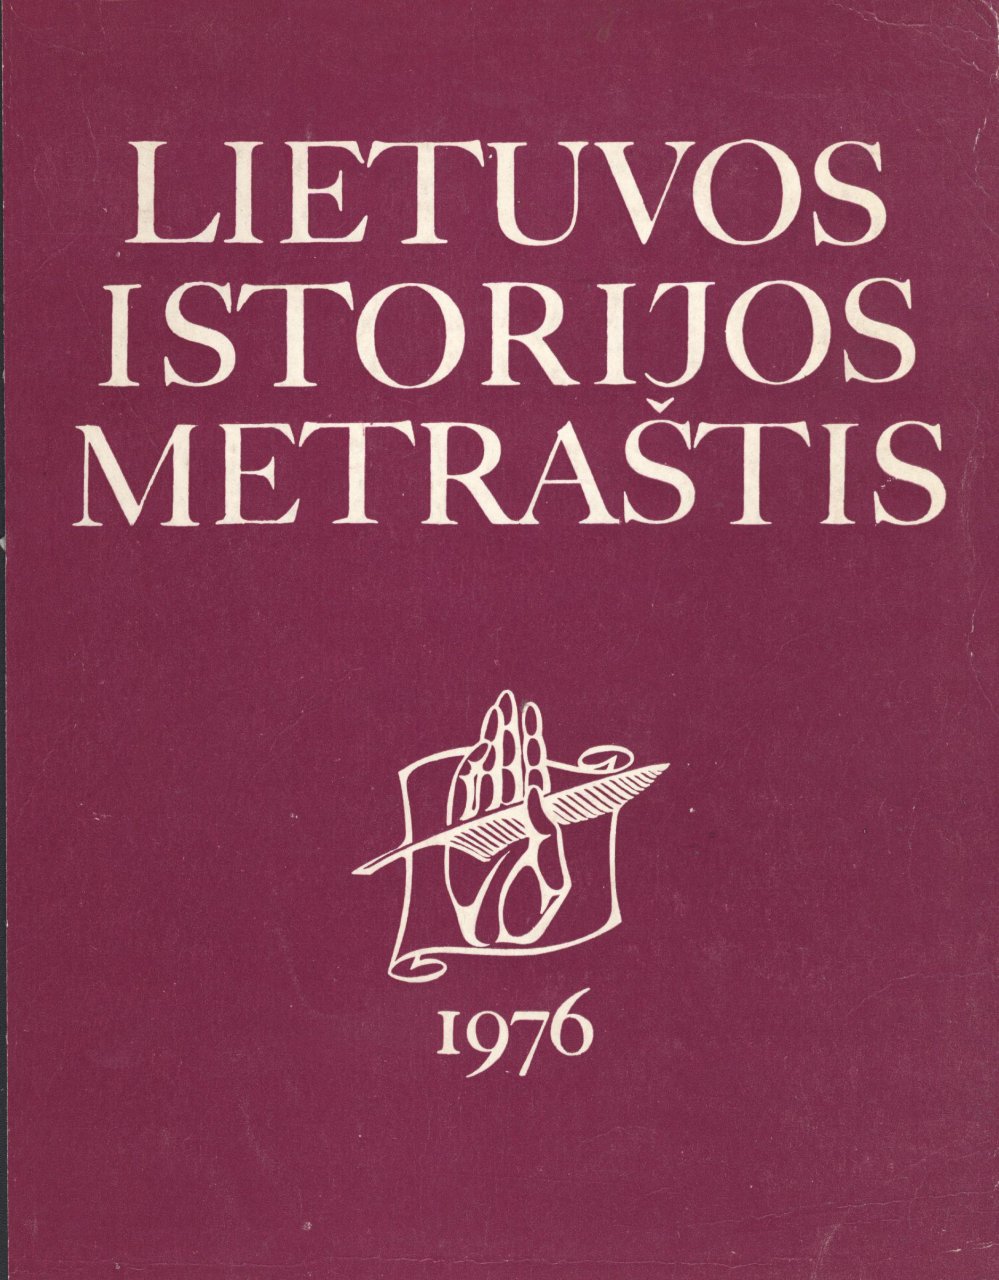 Lietuvos istorijos metraštis 1976 metai